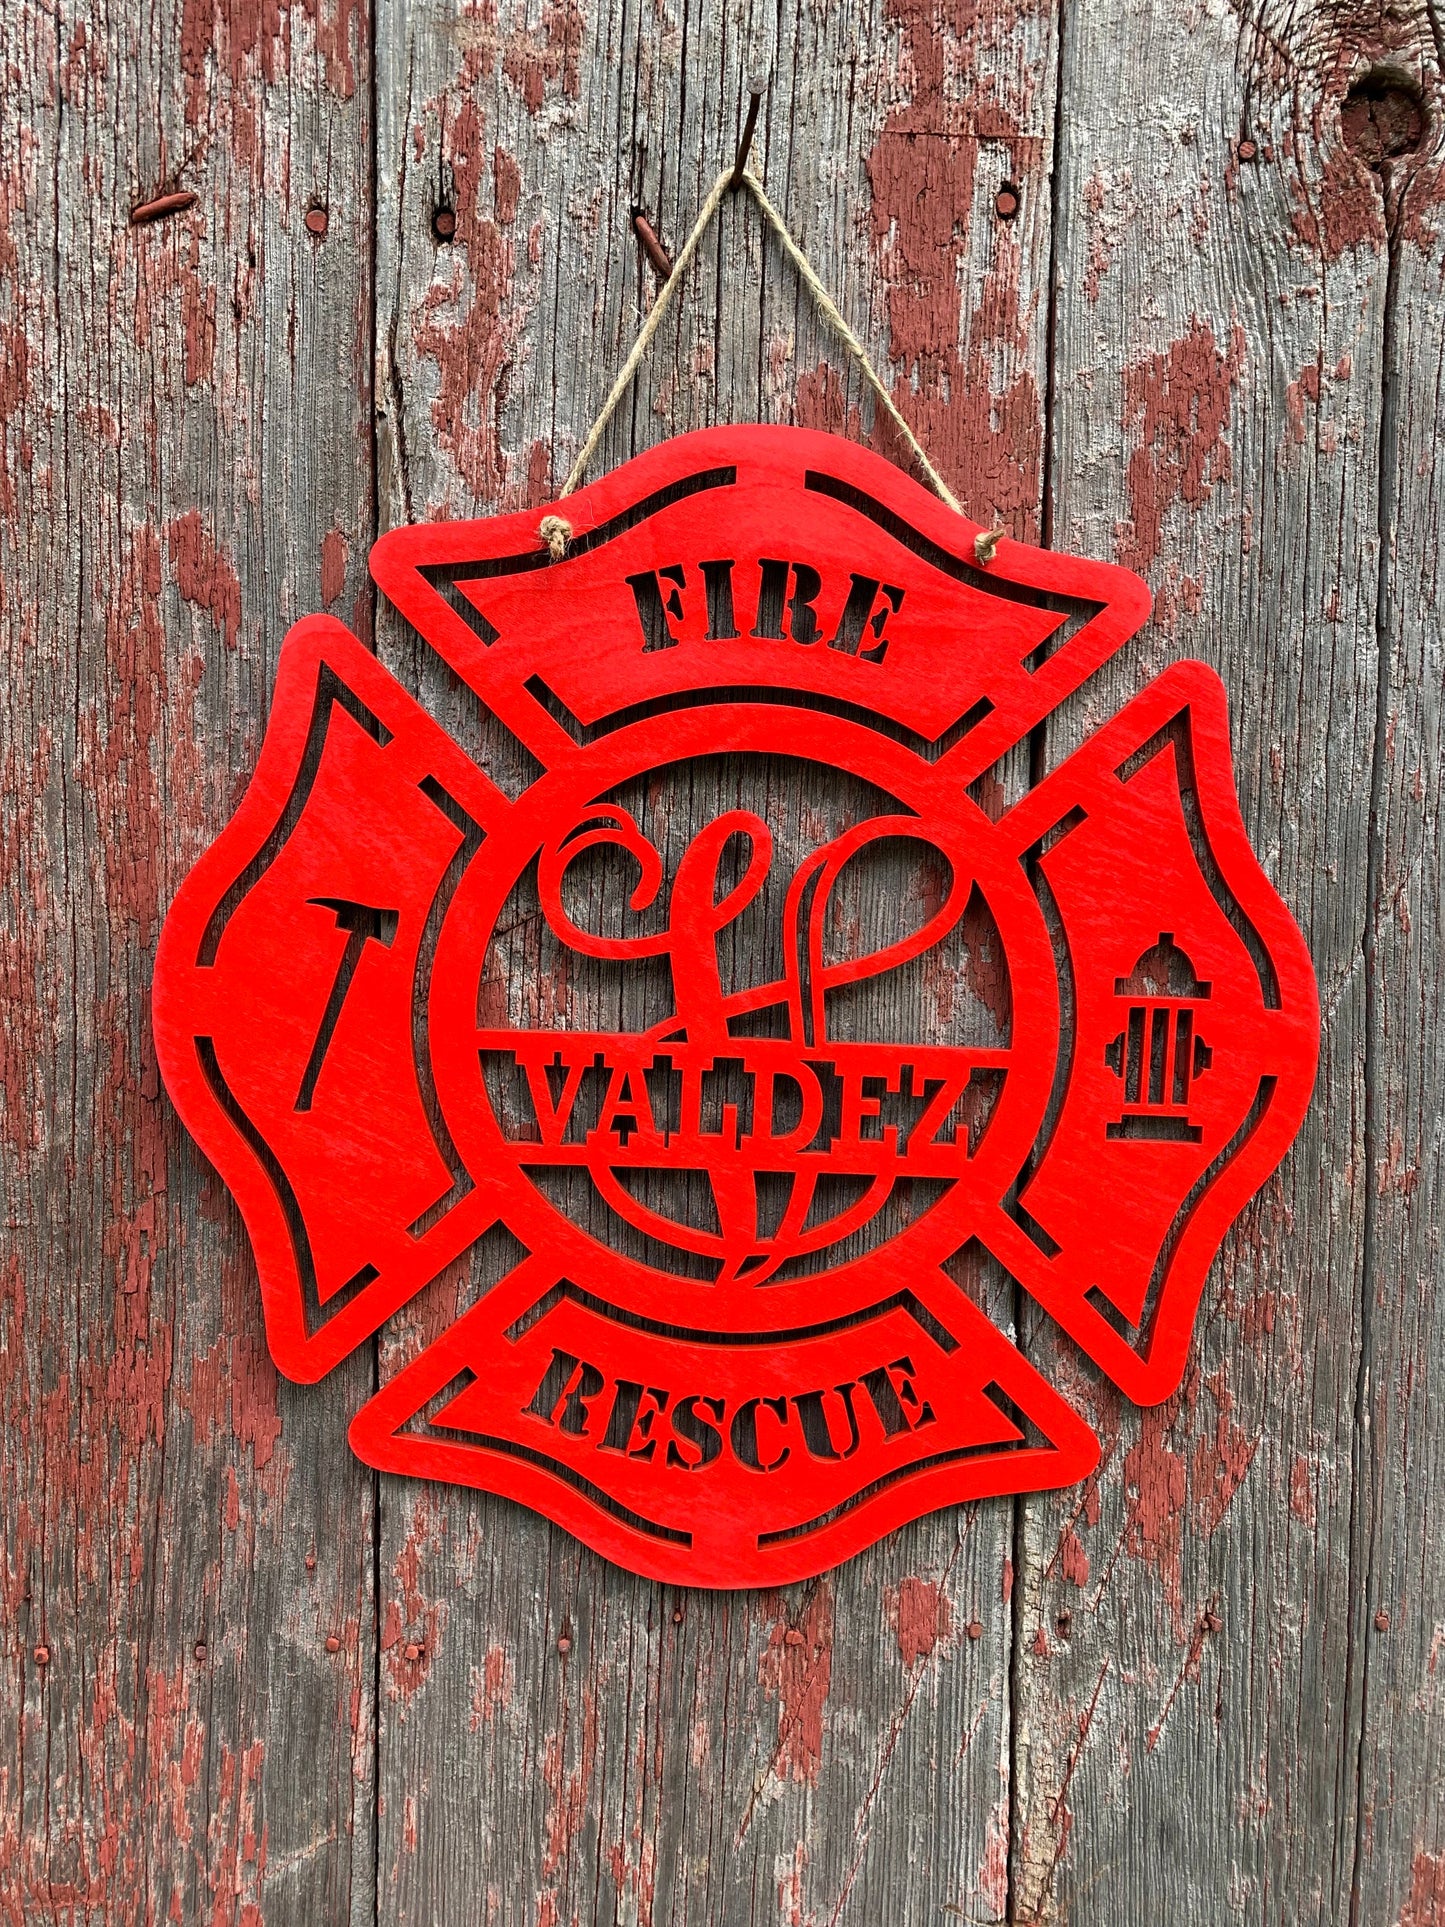 Firefighter Maltese Cross, Door Hanger, Wood, Axe